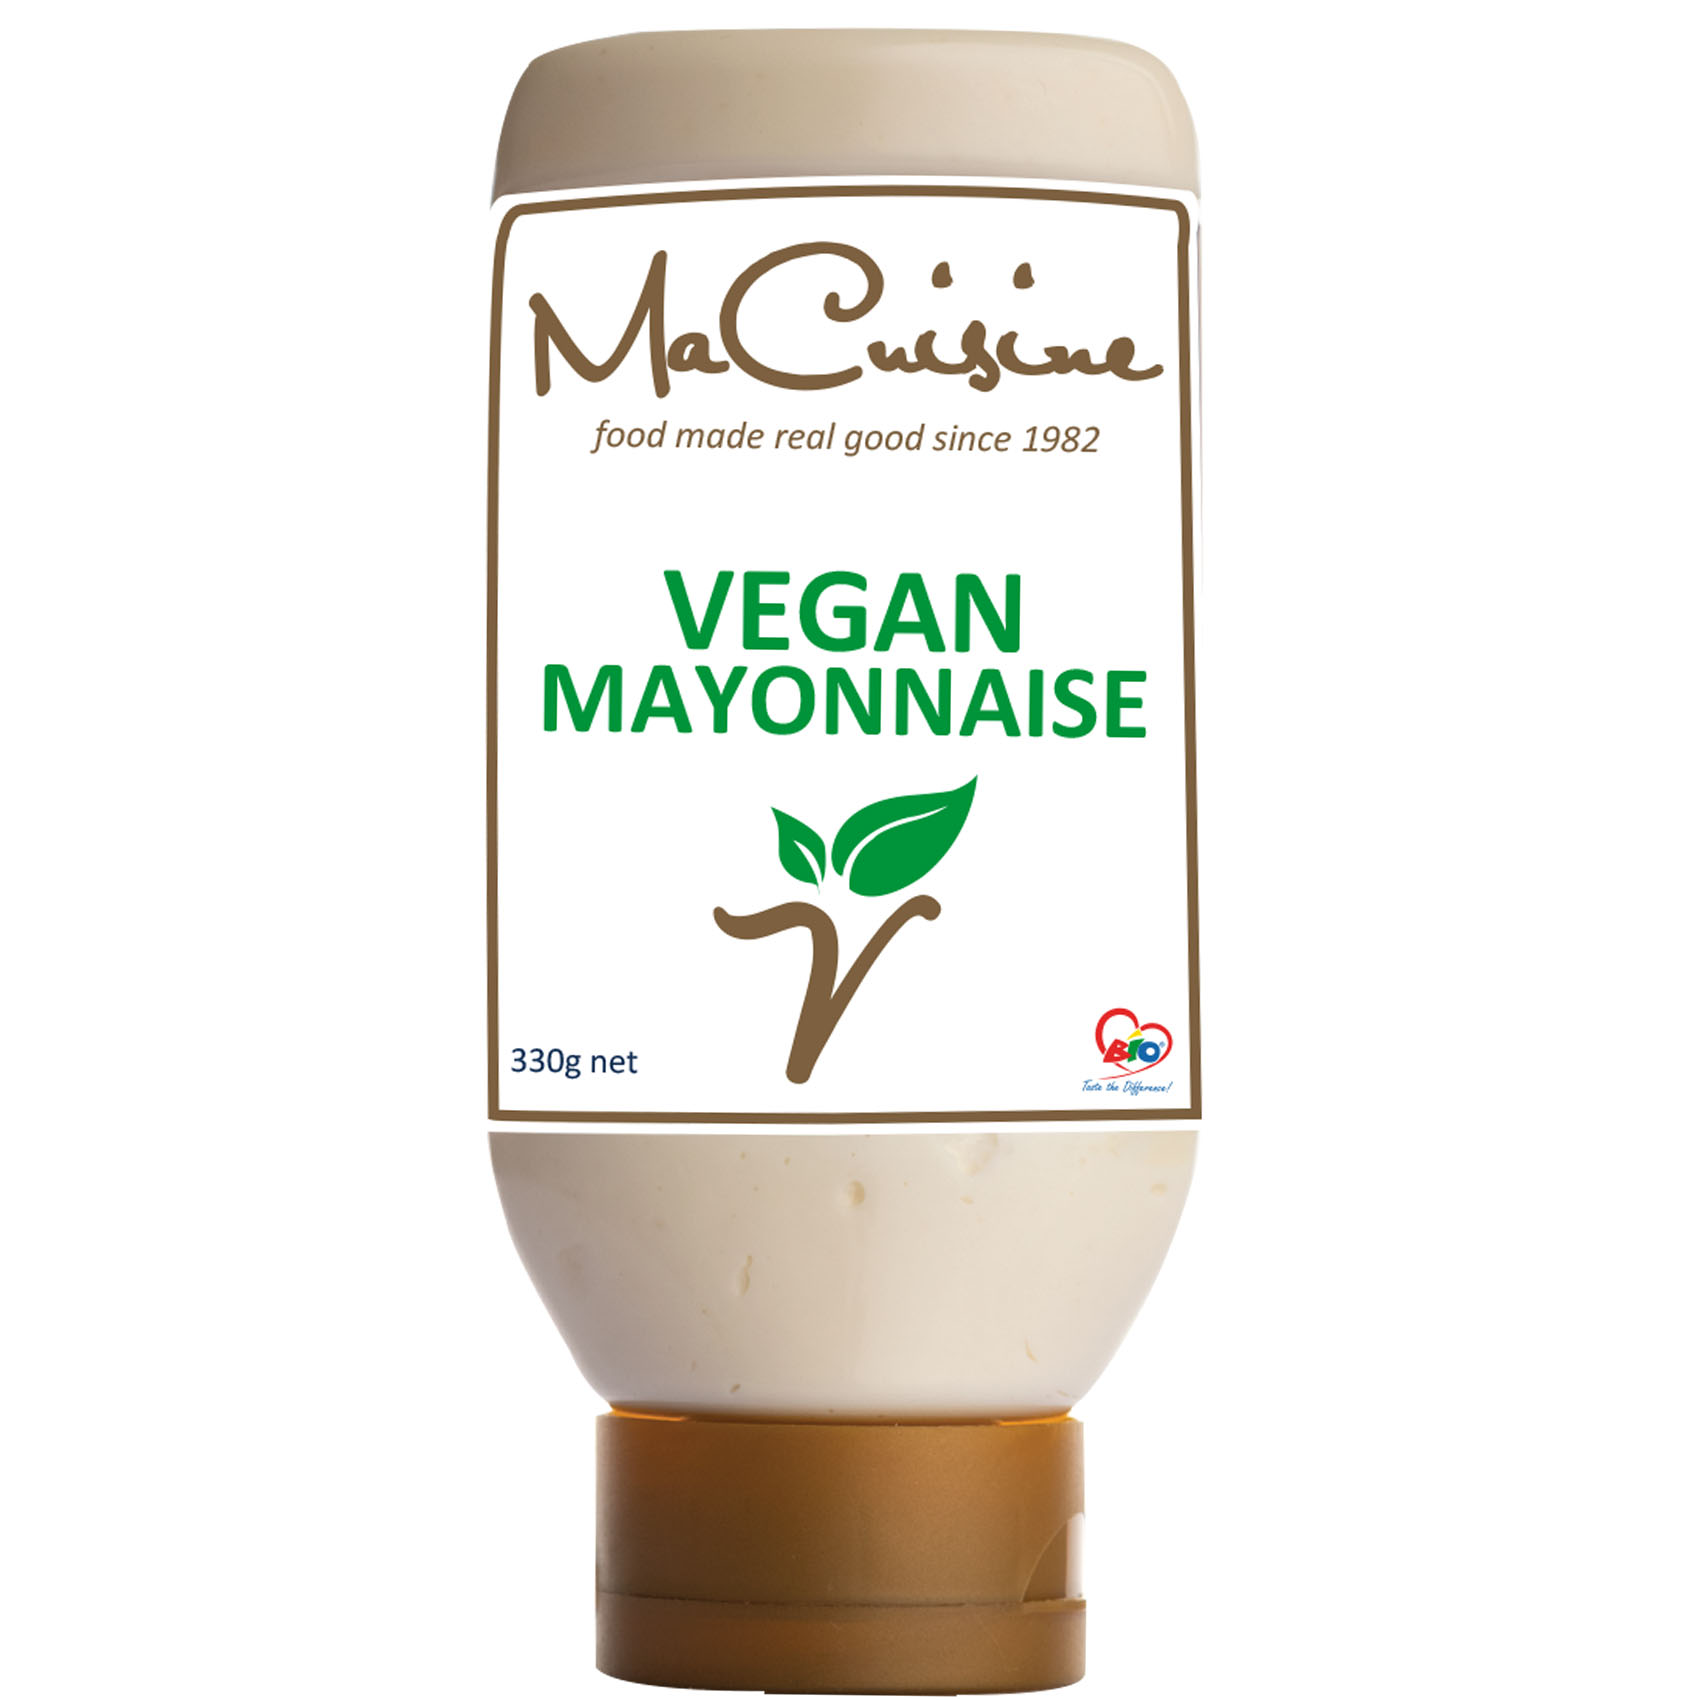 Macuisine Vegan Mayonnaise 330g